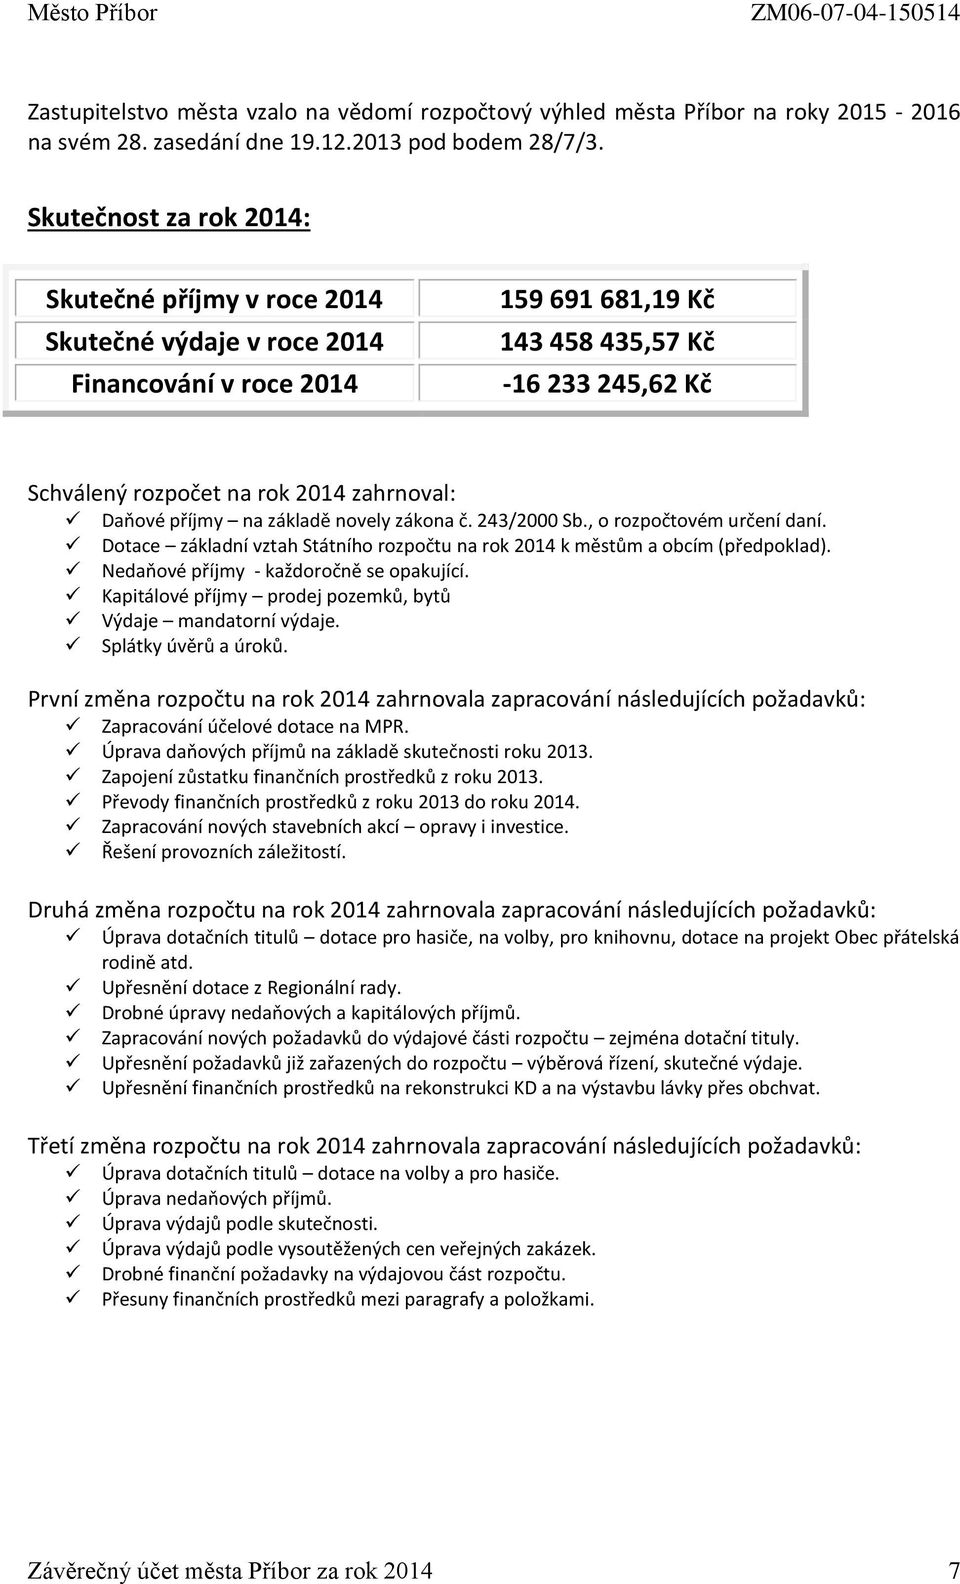 Daňové příjmy na základě novely zákona č. 243/2000 Sb., o rozpočtovém určení daní. Dotace základní vztah Státního rozpočtu na rok 2014 k městům a obcím (předpoklad).